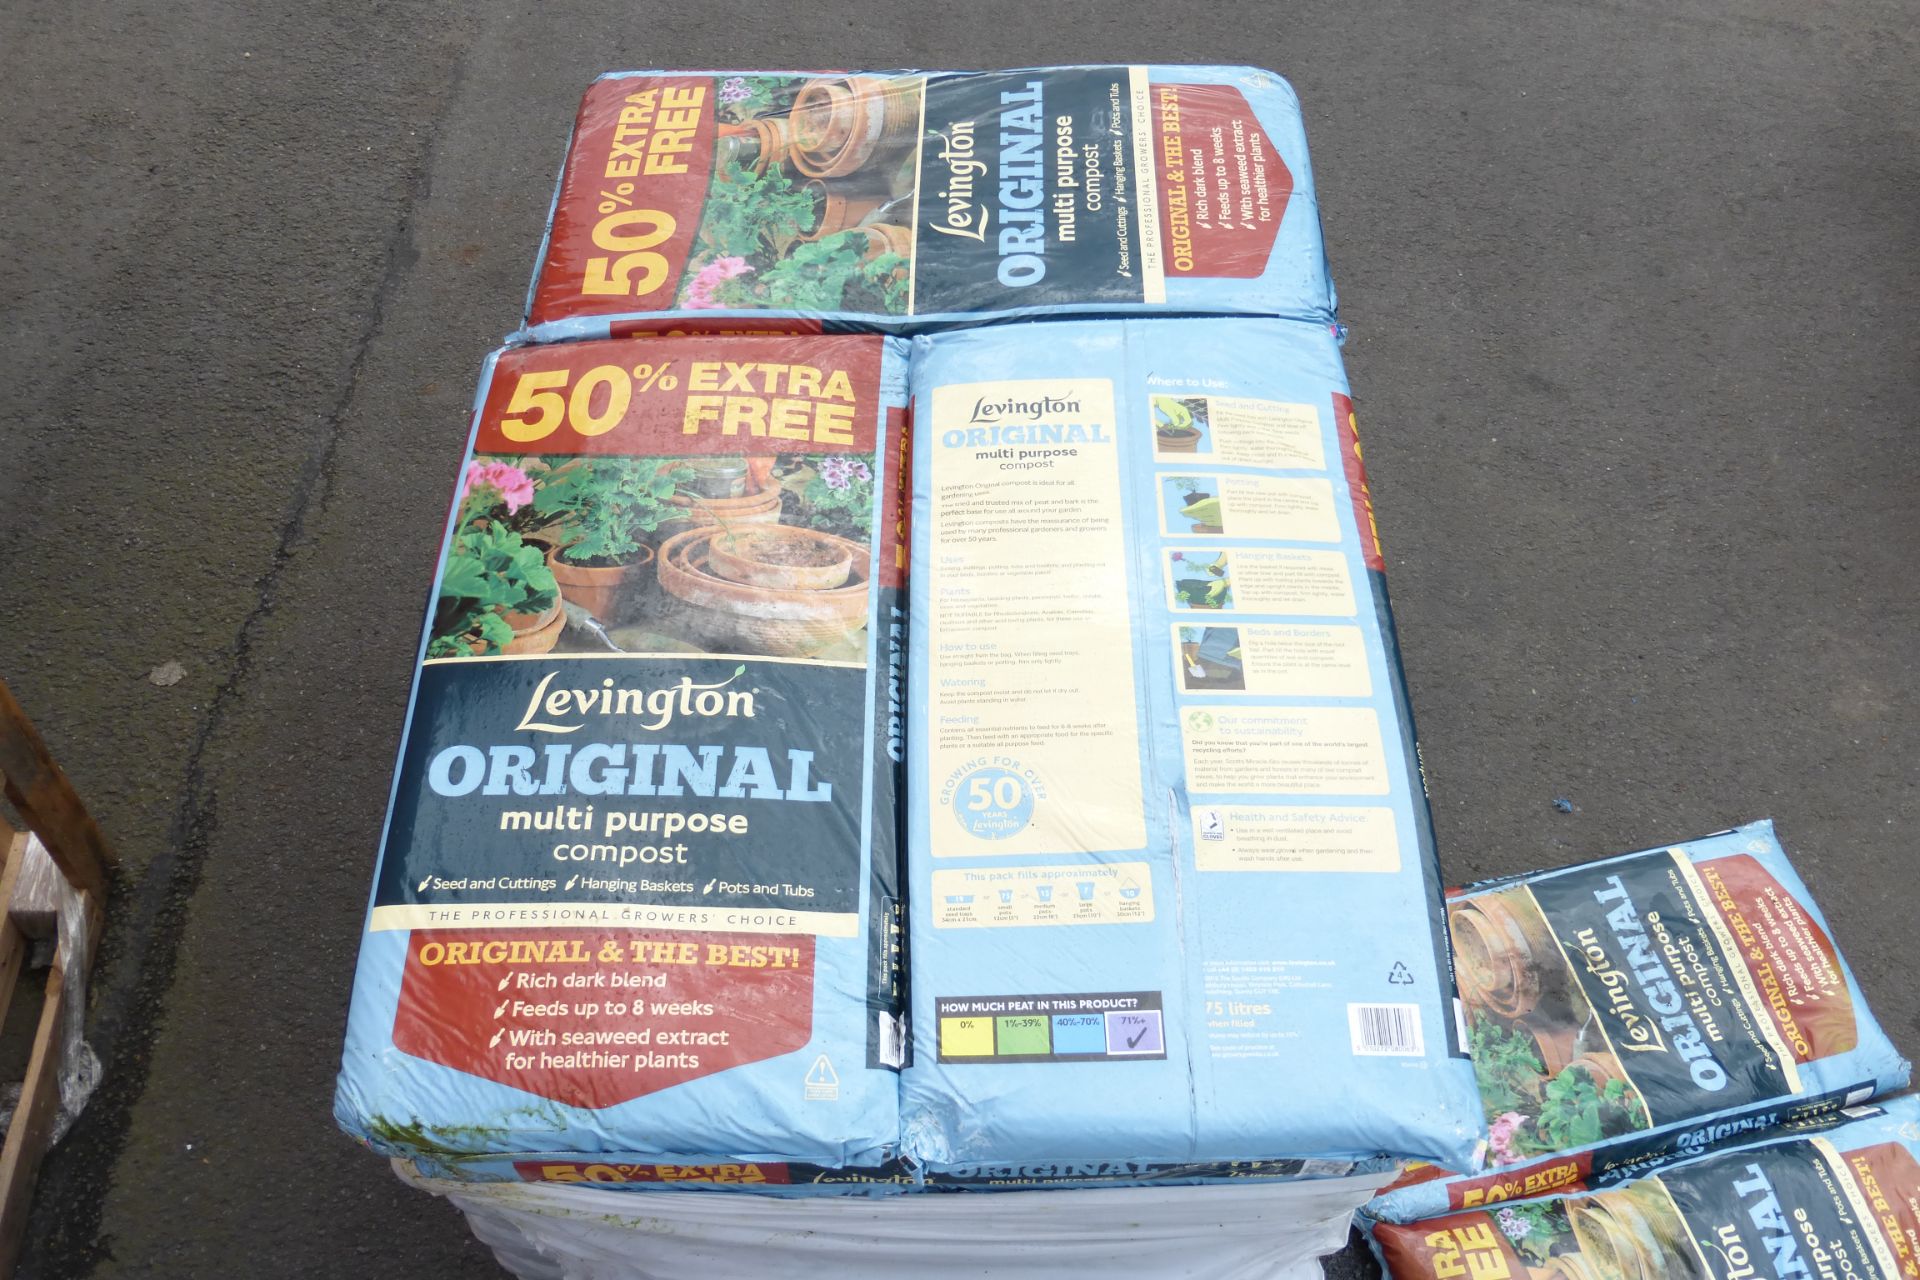 * 3 x Levington Original Multi-Purpose Compost 50% Extra Free